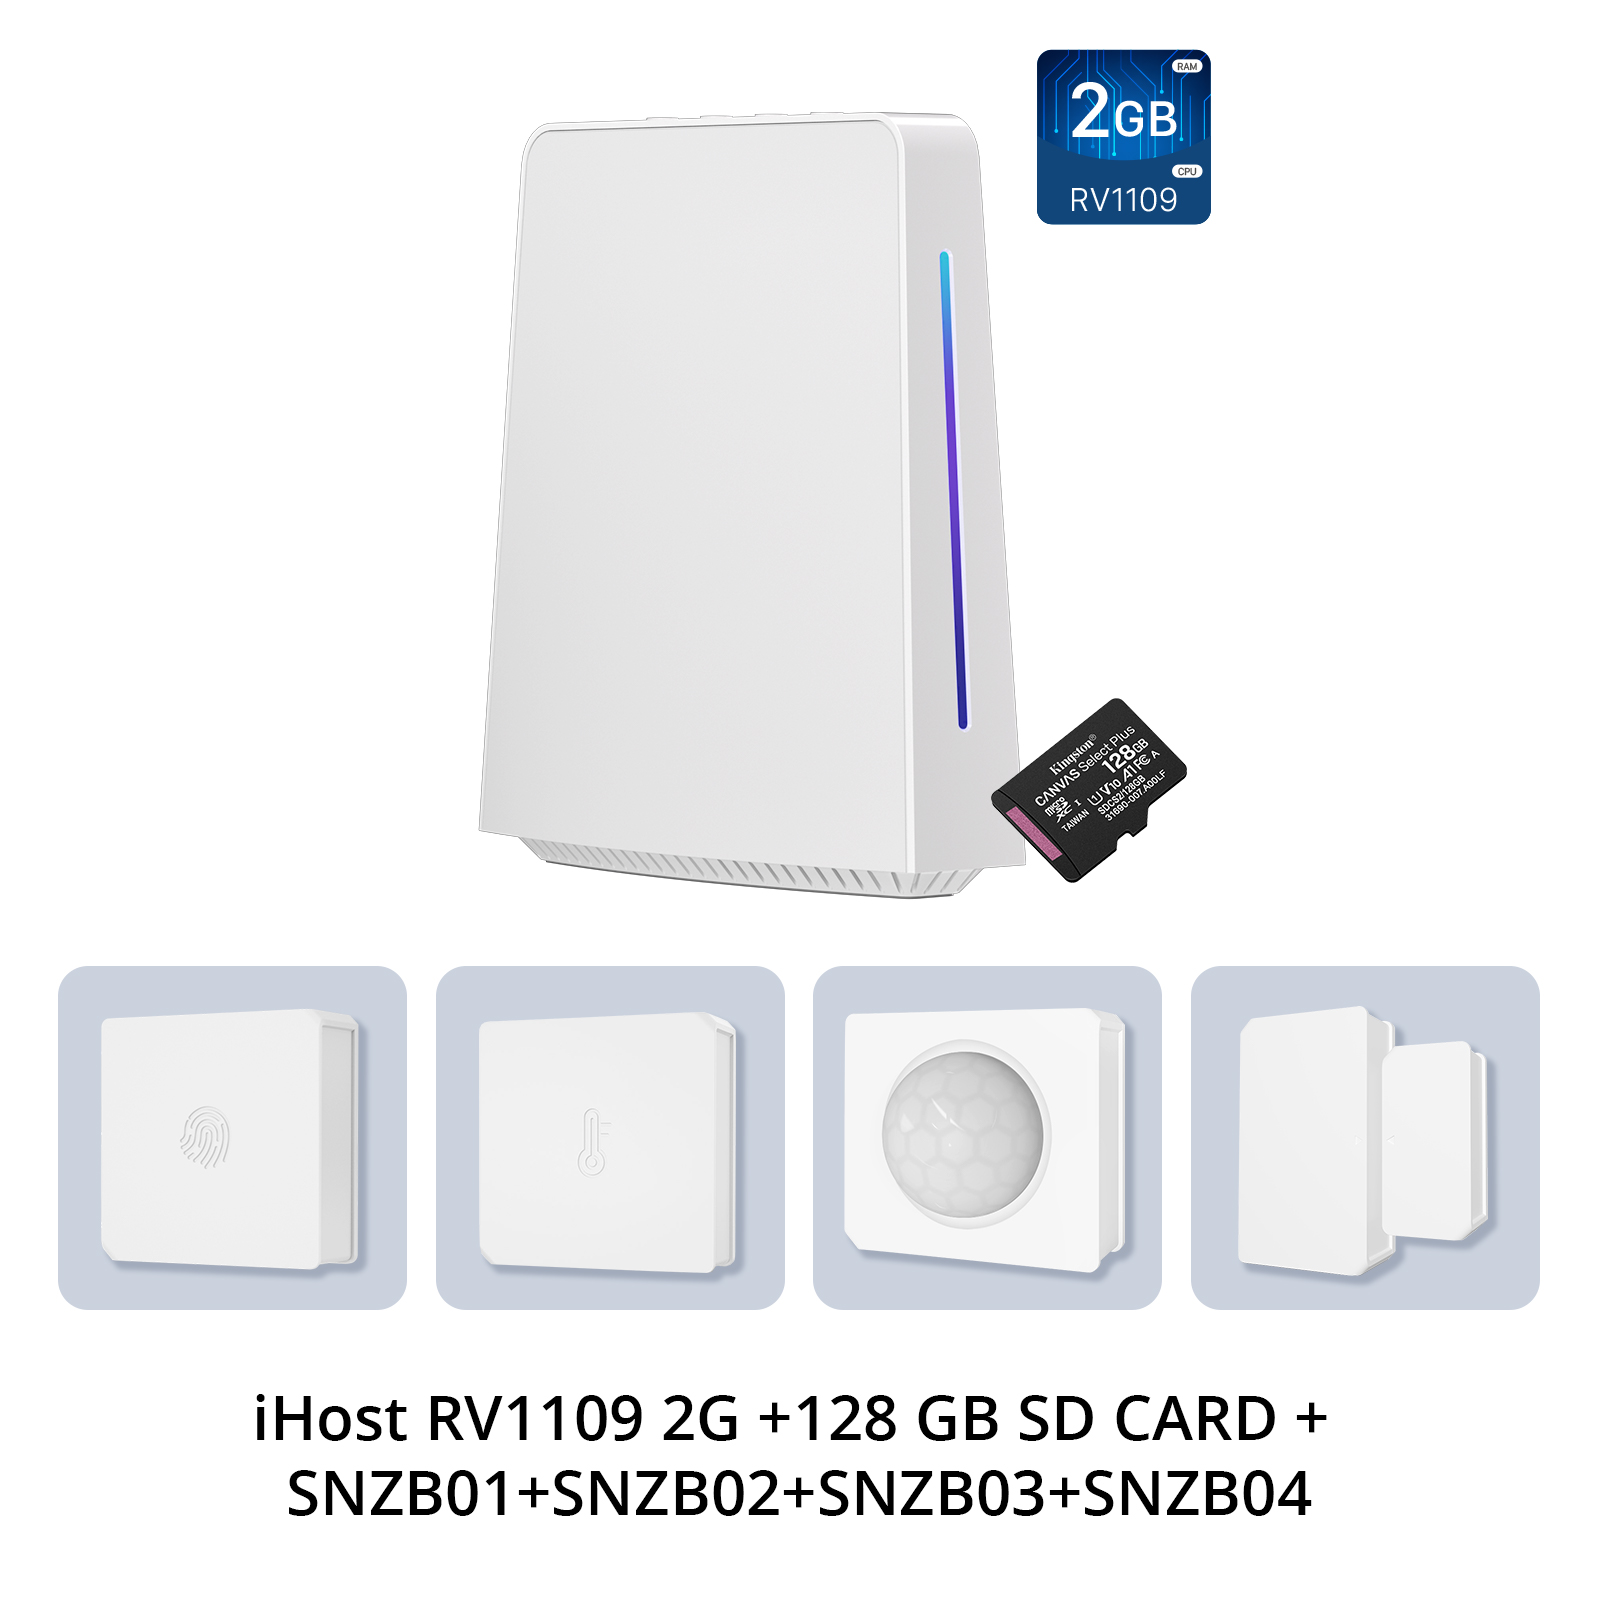 1 PCS RV1109 2G +128 GB SD Card + SNZB01+SNZB02+SNZB03+SNZB04